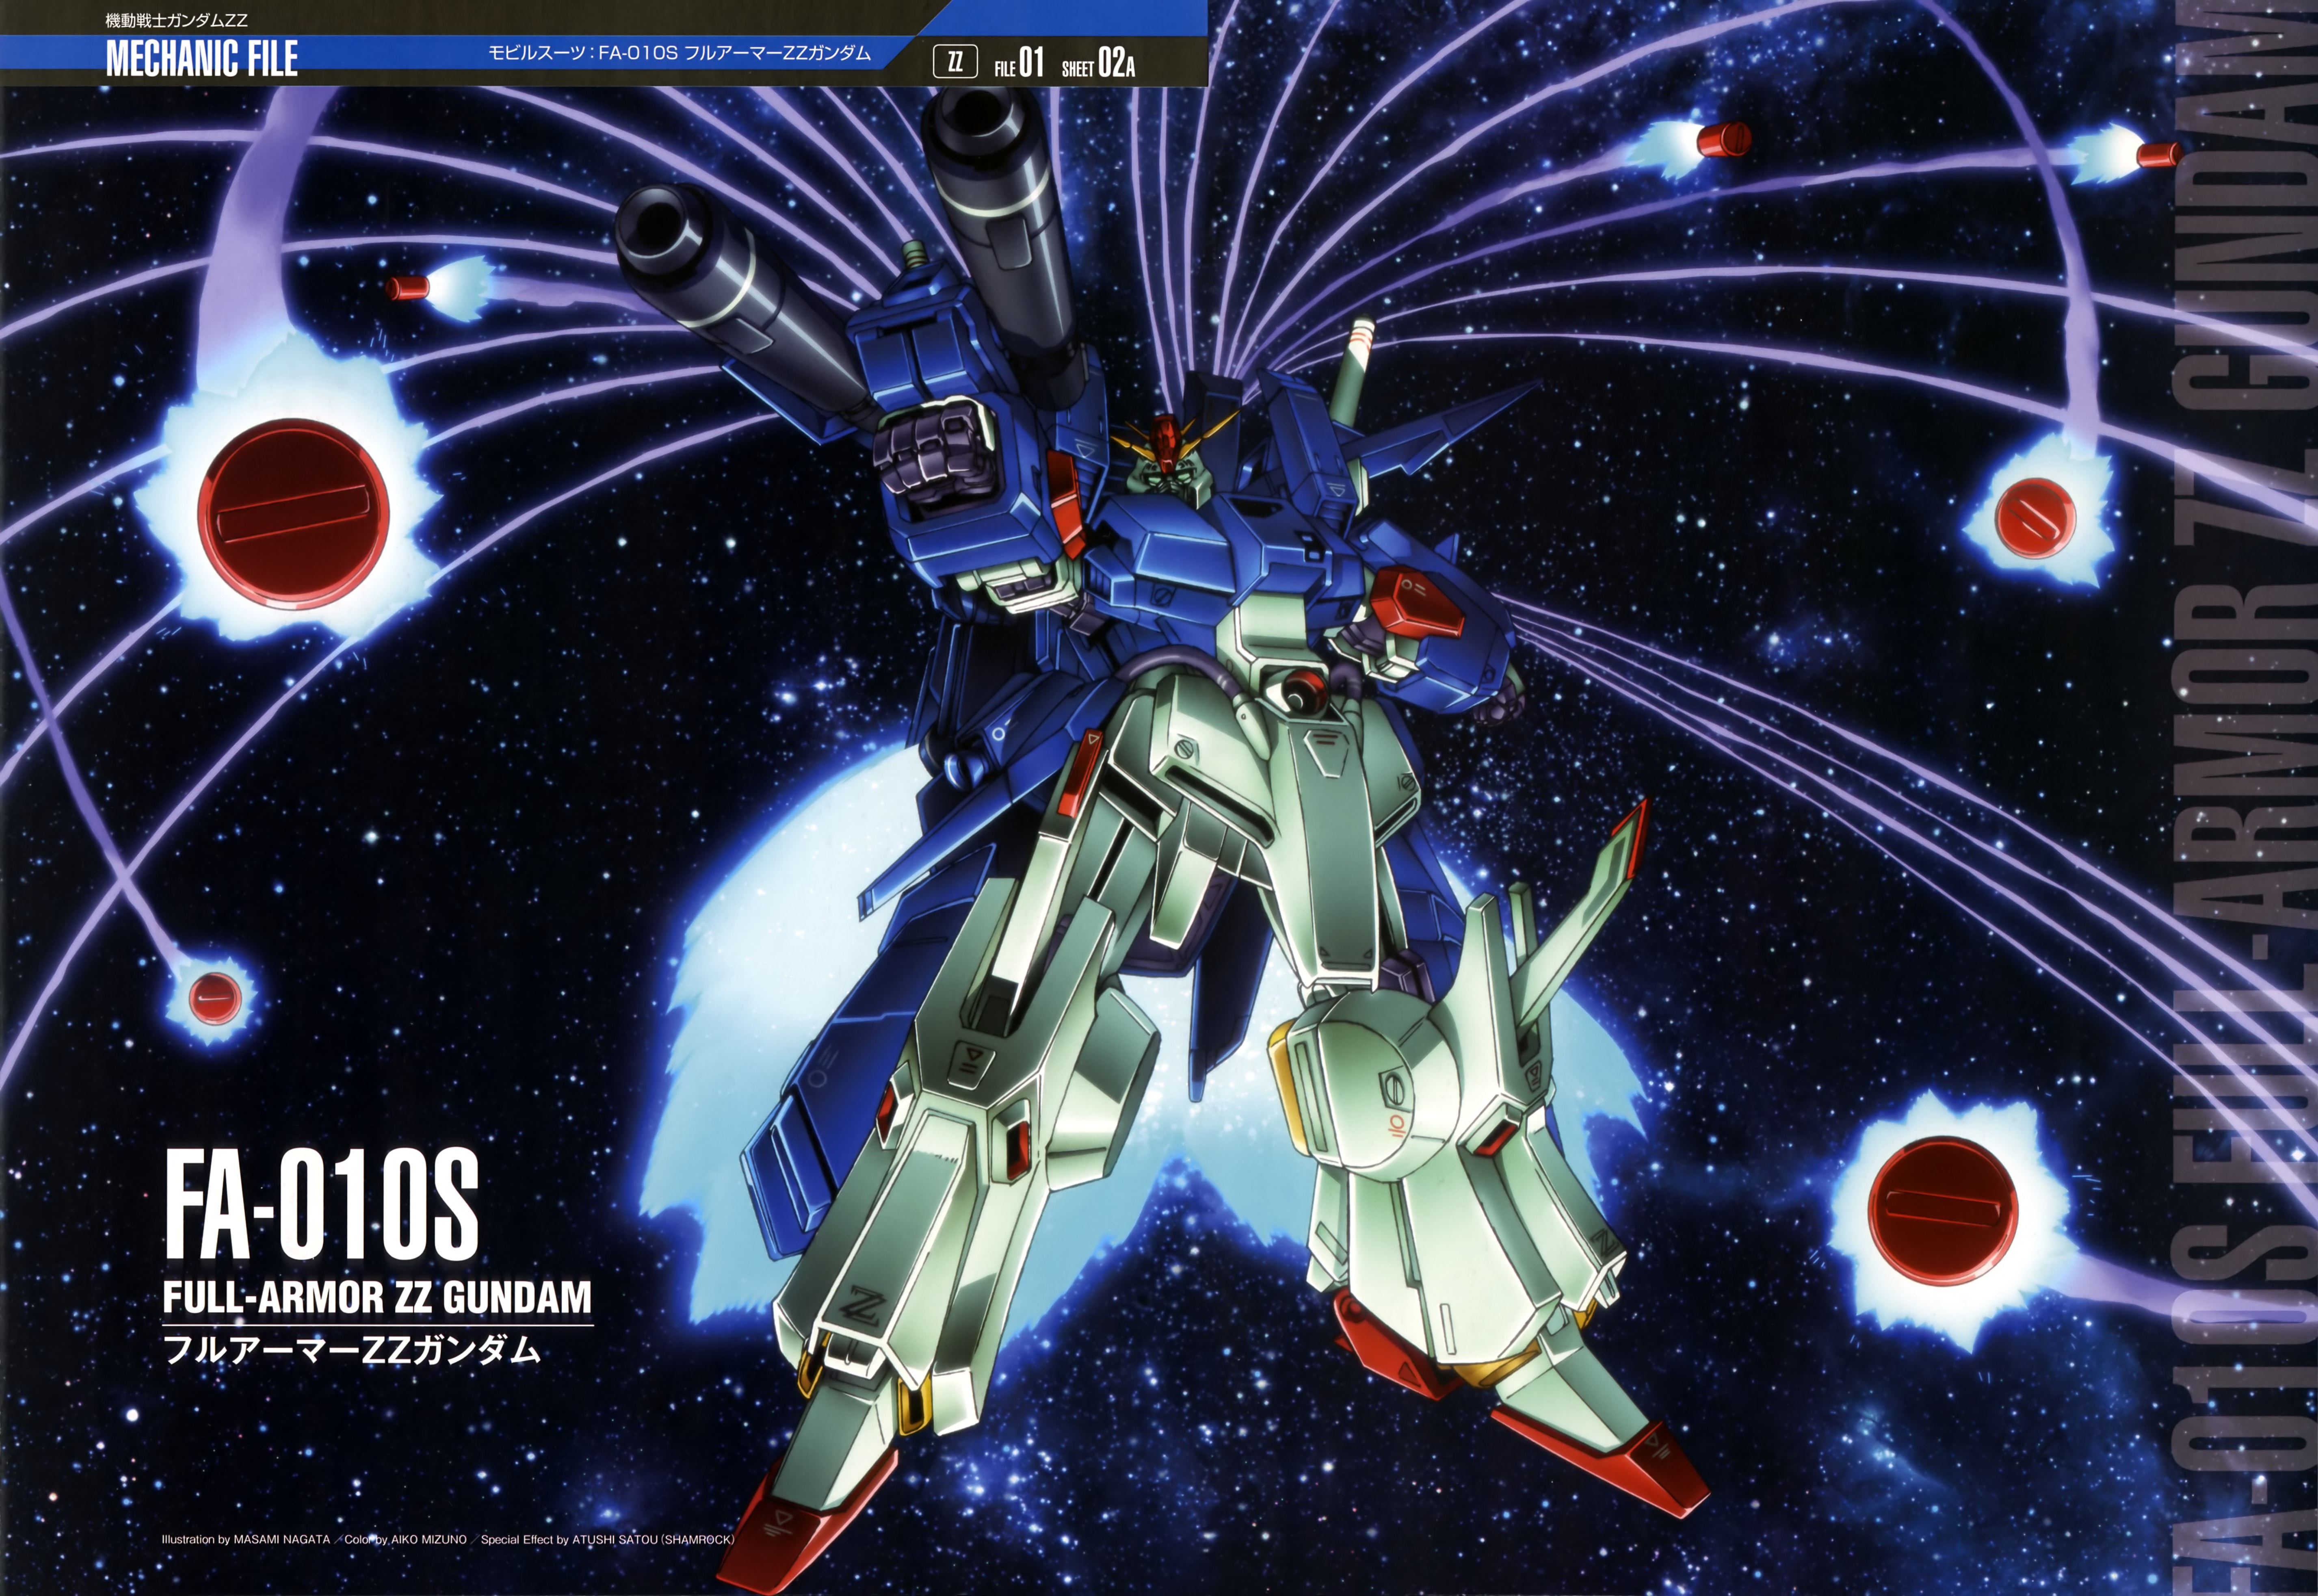 Mobile Suit Gundam ZZ Mobile Suit Gundam ZZ Gundam Universal Century Robots Mobile Suit Gundam 5707x3929